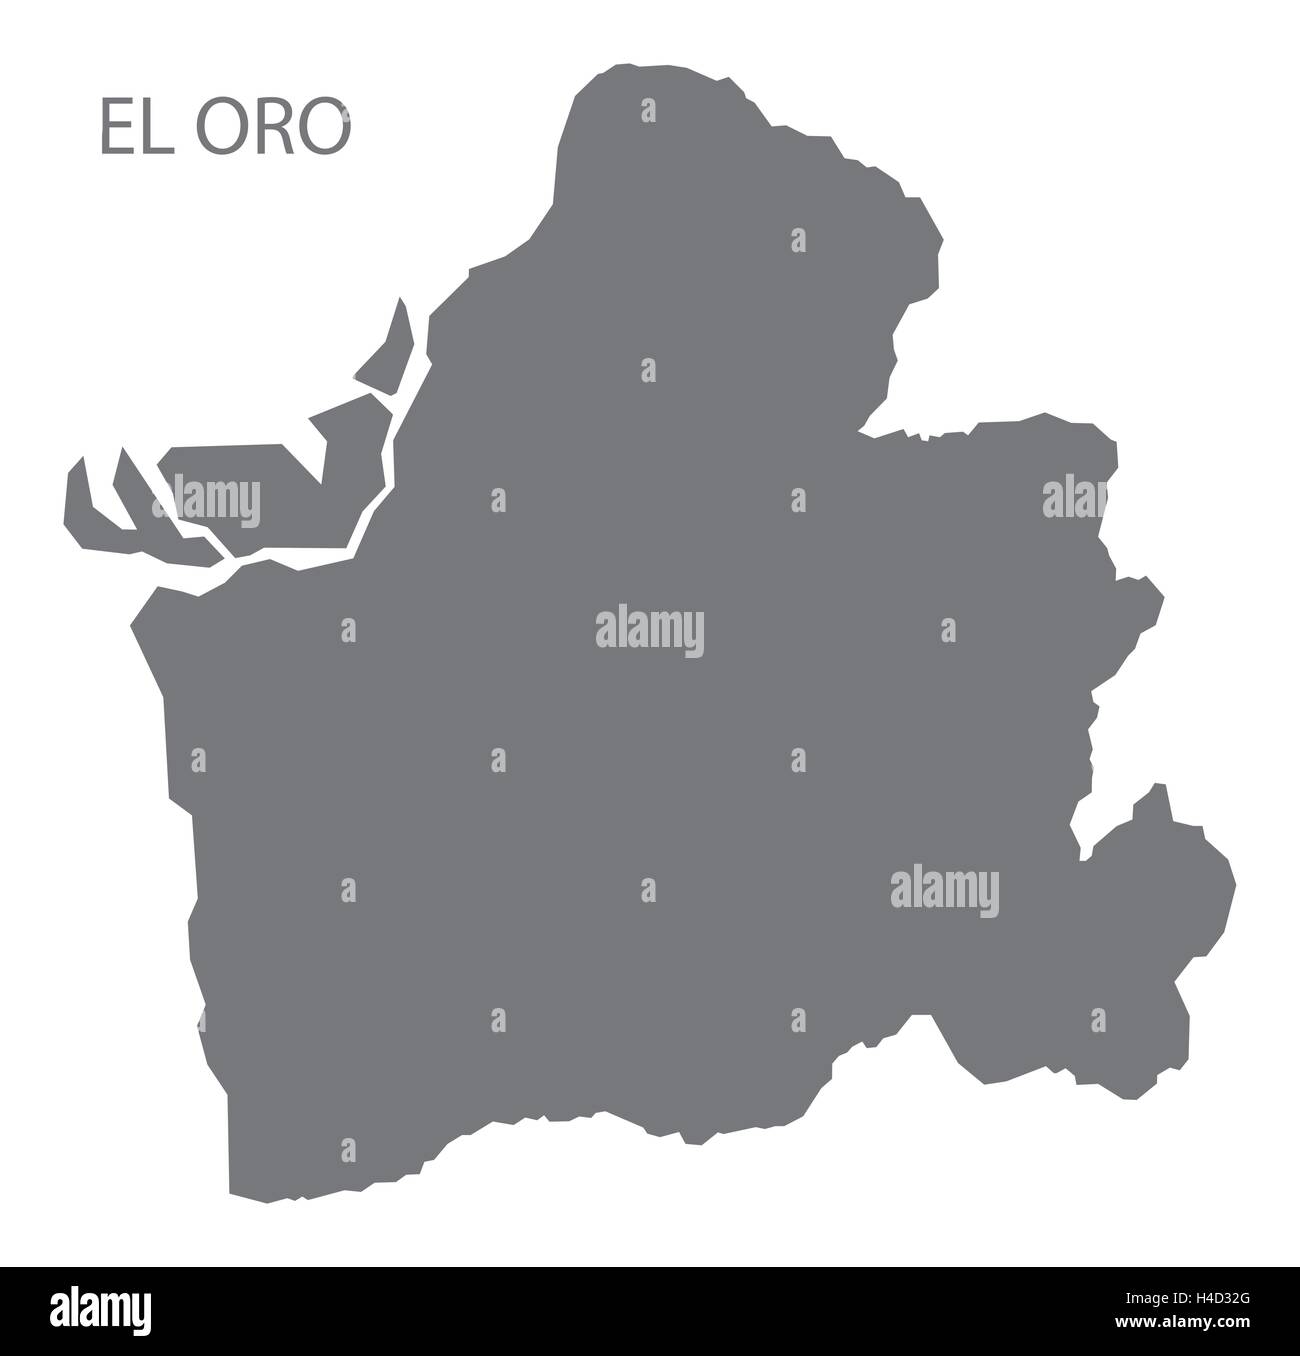 El Oro Ecuador Karte grau Stock Vektor